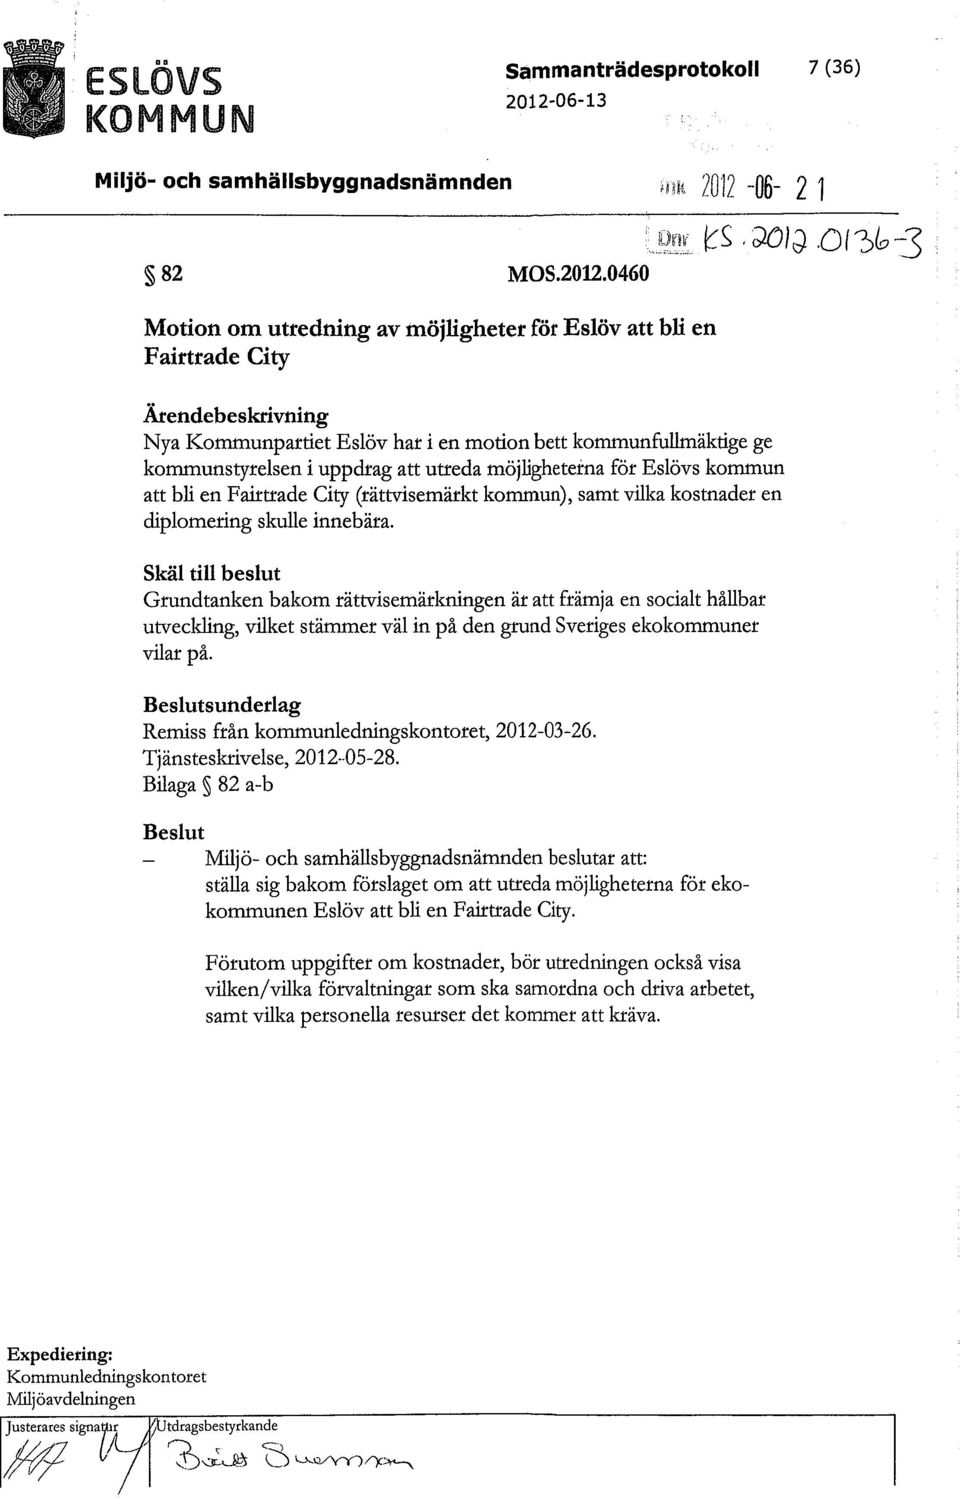 0460 Motion om utredning av möjligheter för Eslöv att bli en,oh 2012-06- 21 Nya Kommunpartiet Eslöv har i en motion bett kommunfullmäktige ge kommunstyrelsen i uppdrag att utreda möjligheterna för